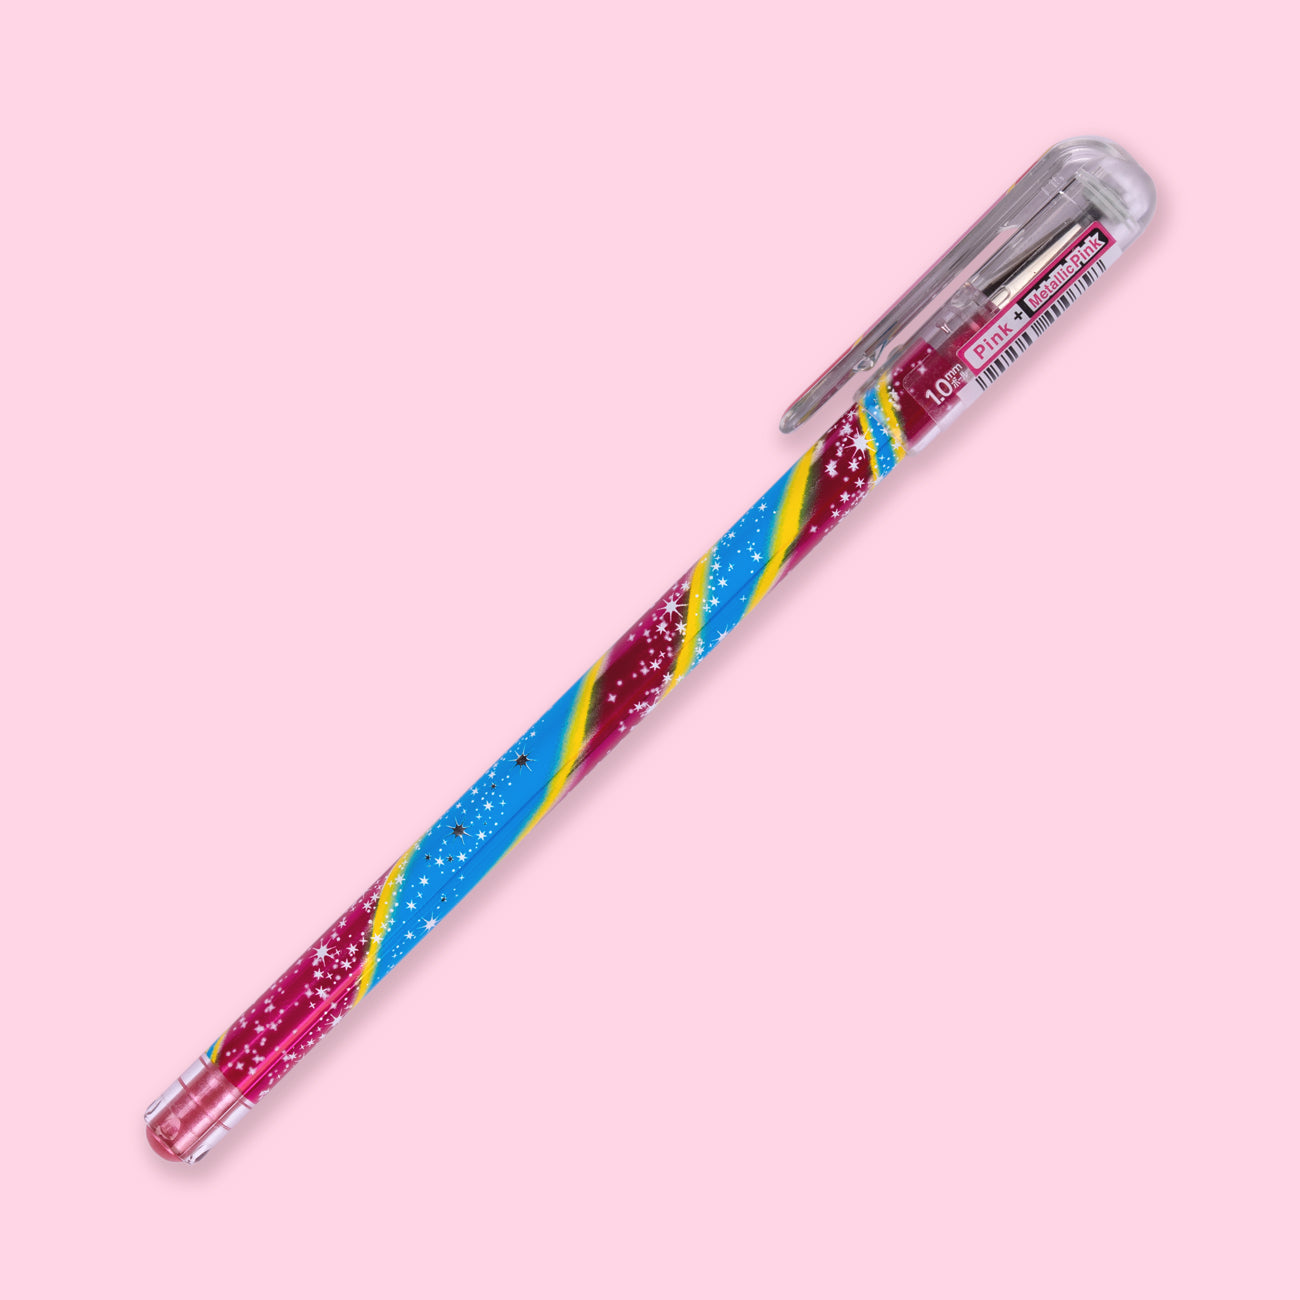 Pentel Hybrid Dual Metallic Pen Limited Design - 1.0 mm - Pink + Metallic Pink